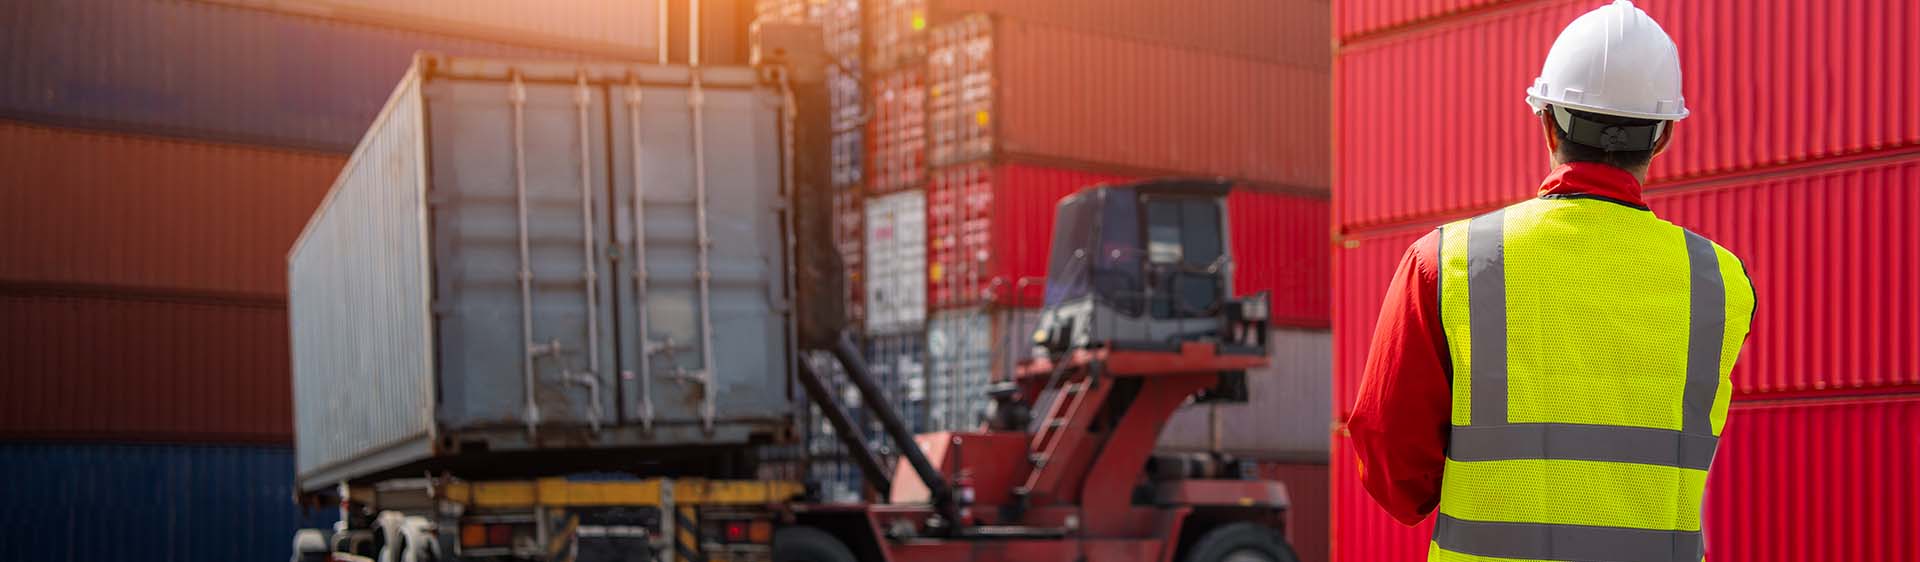 Orlando Transportation Broker, Logistics Services and Transportation Logistics